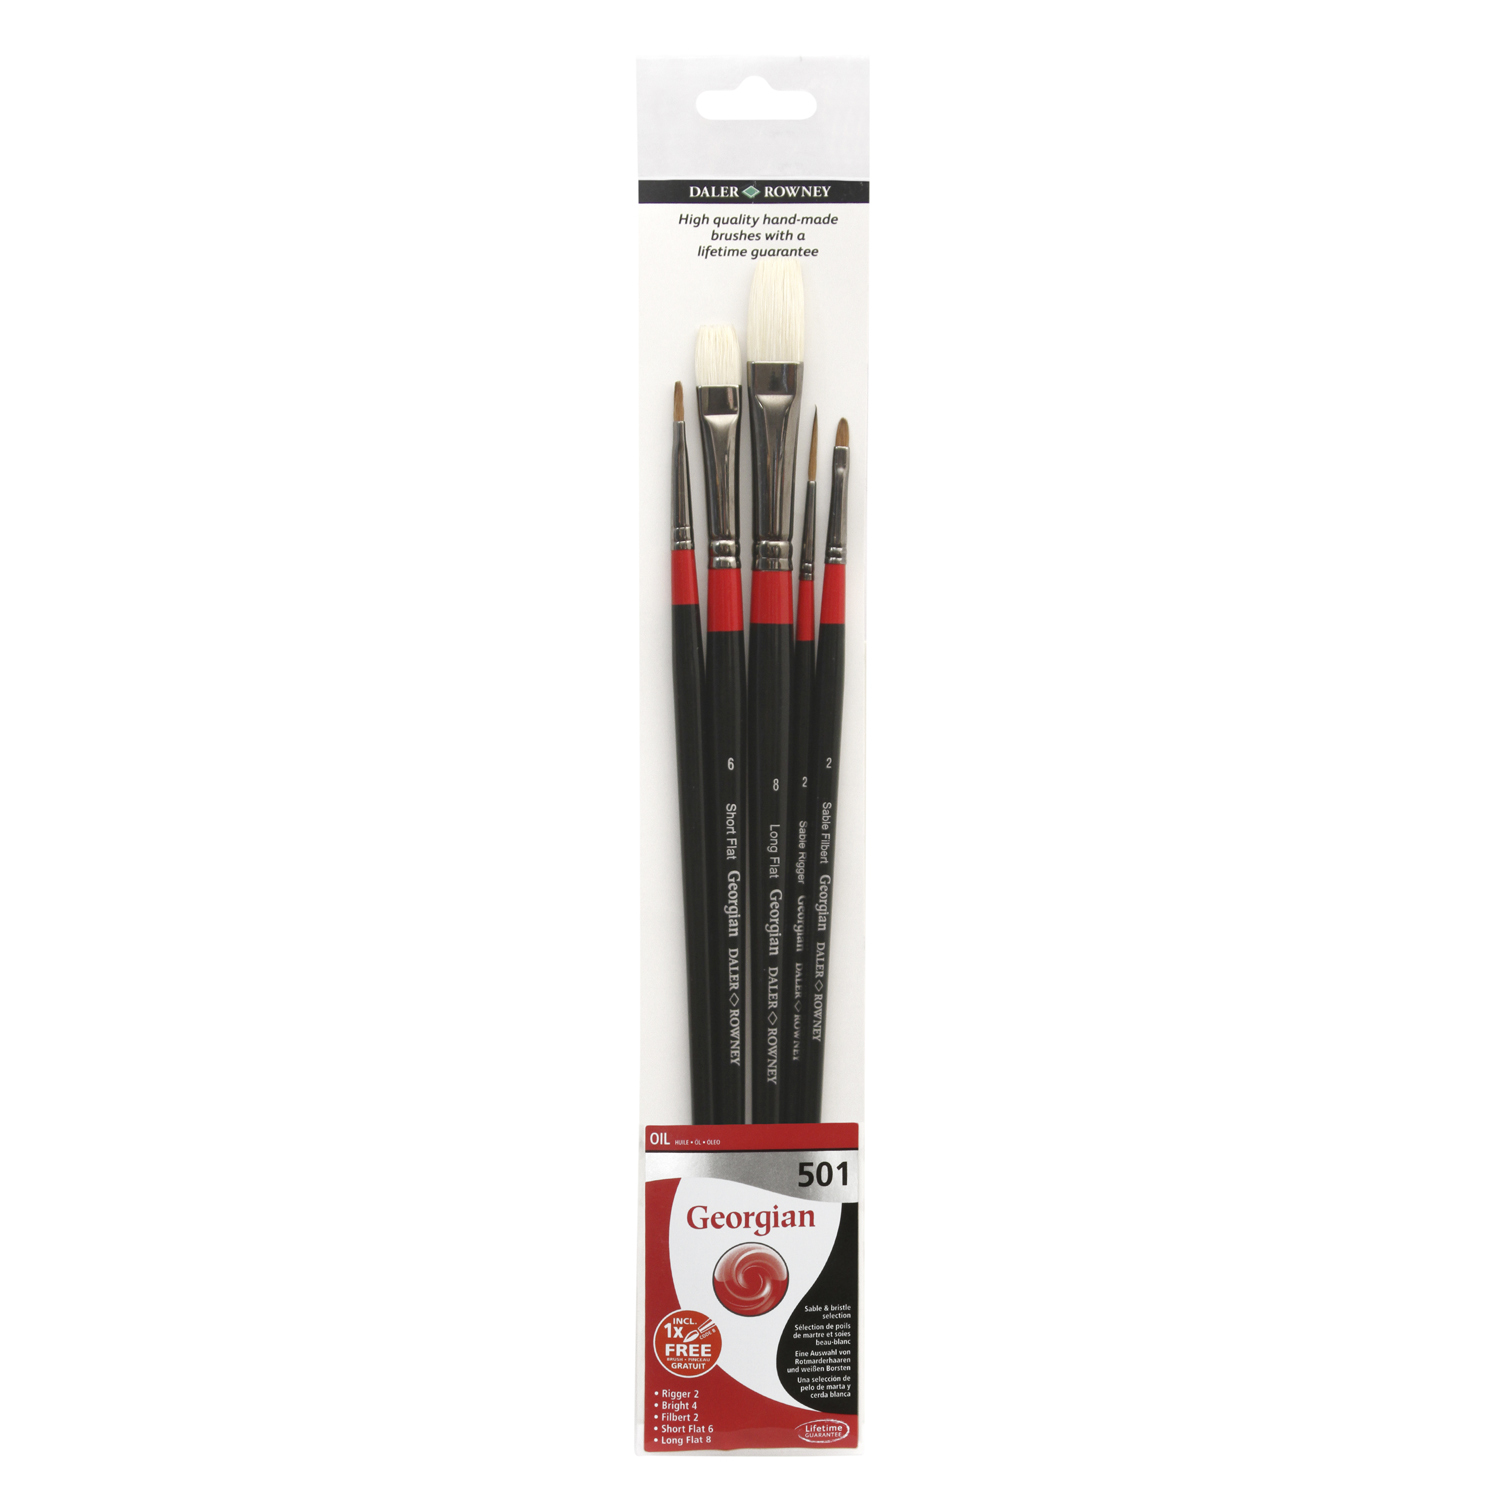 Pack of 5 Daler-Rowney Georgian Long Handle 501 Brushes Image